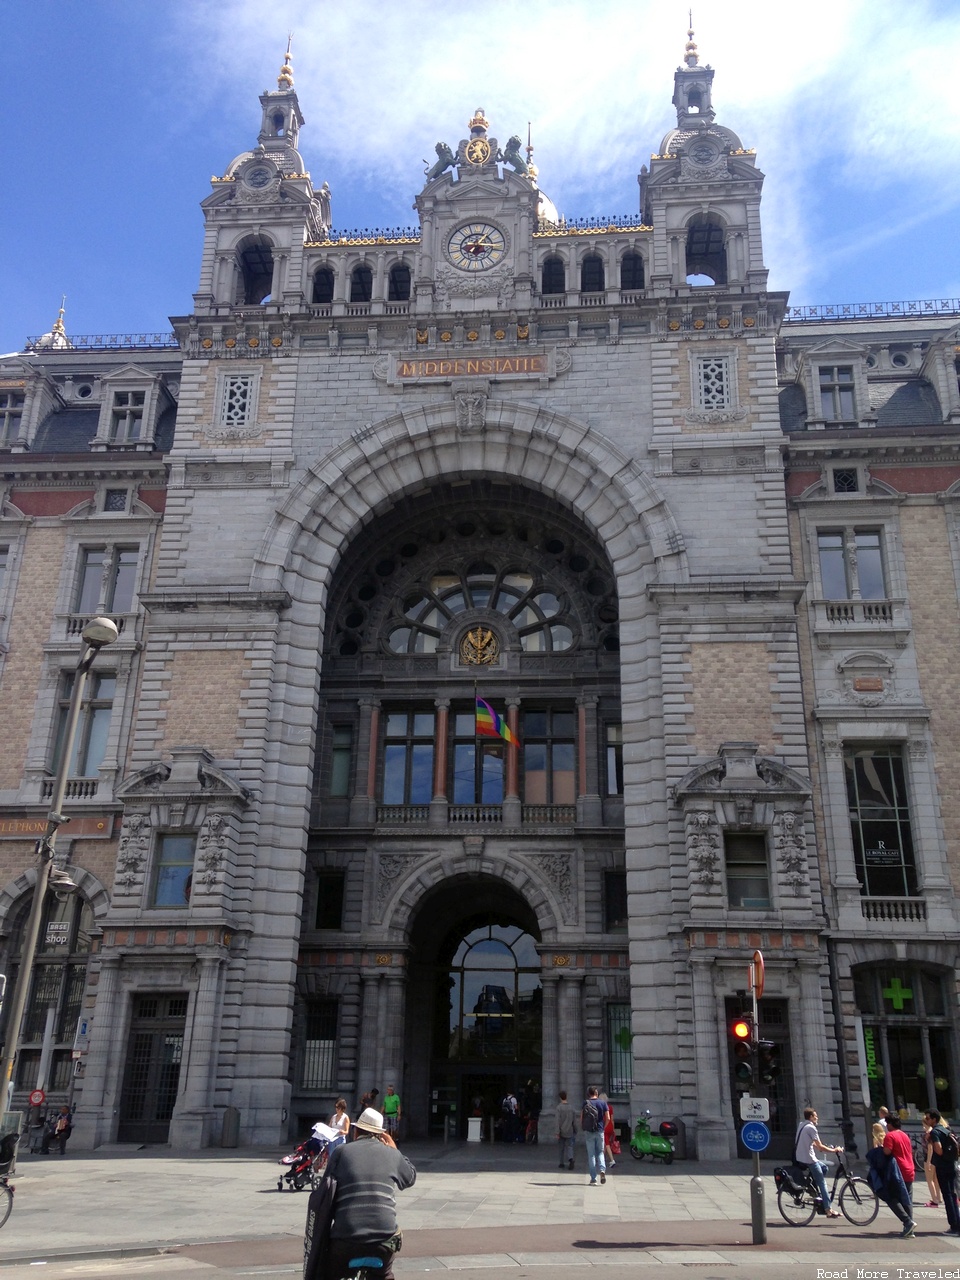 Antwerpen Centraal rail station